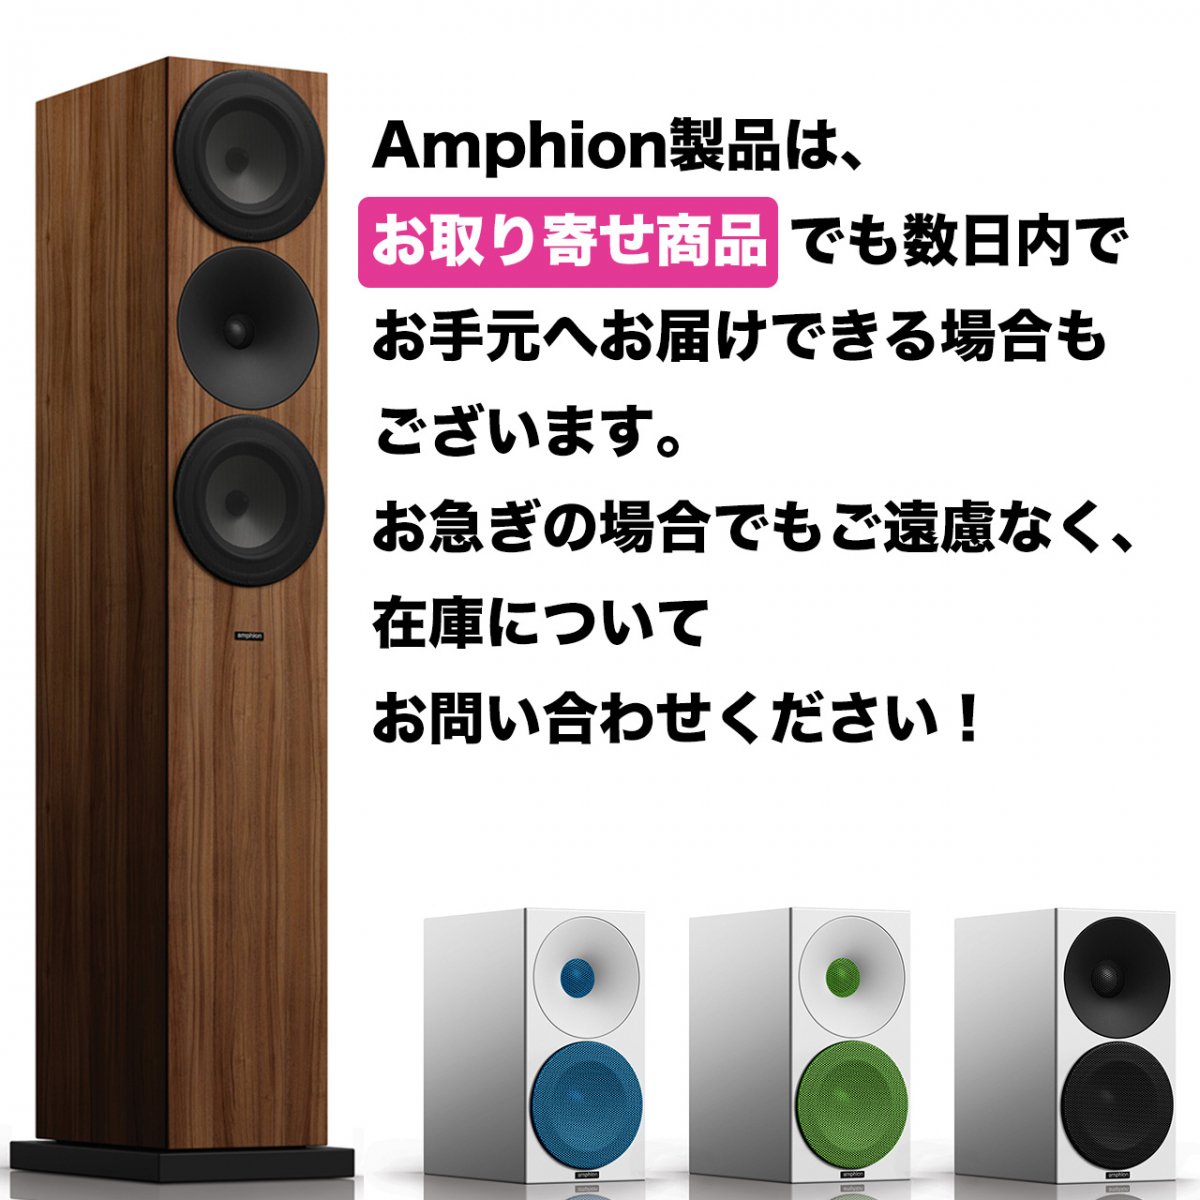 【シンプル＆ナチュラルサウンド】Argon0 （Standard white） Bookshelf loudspeaker【ペア】